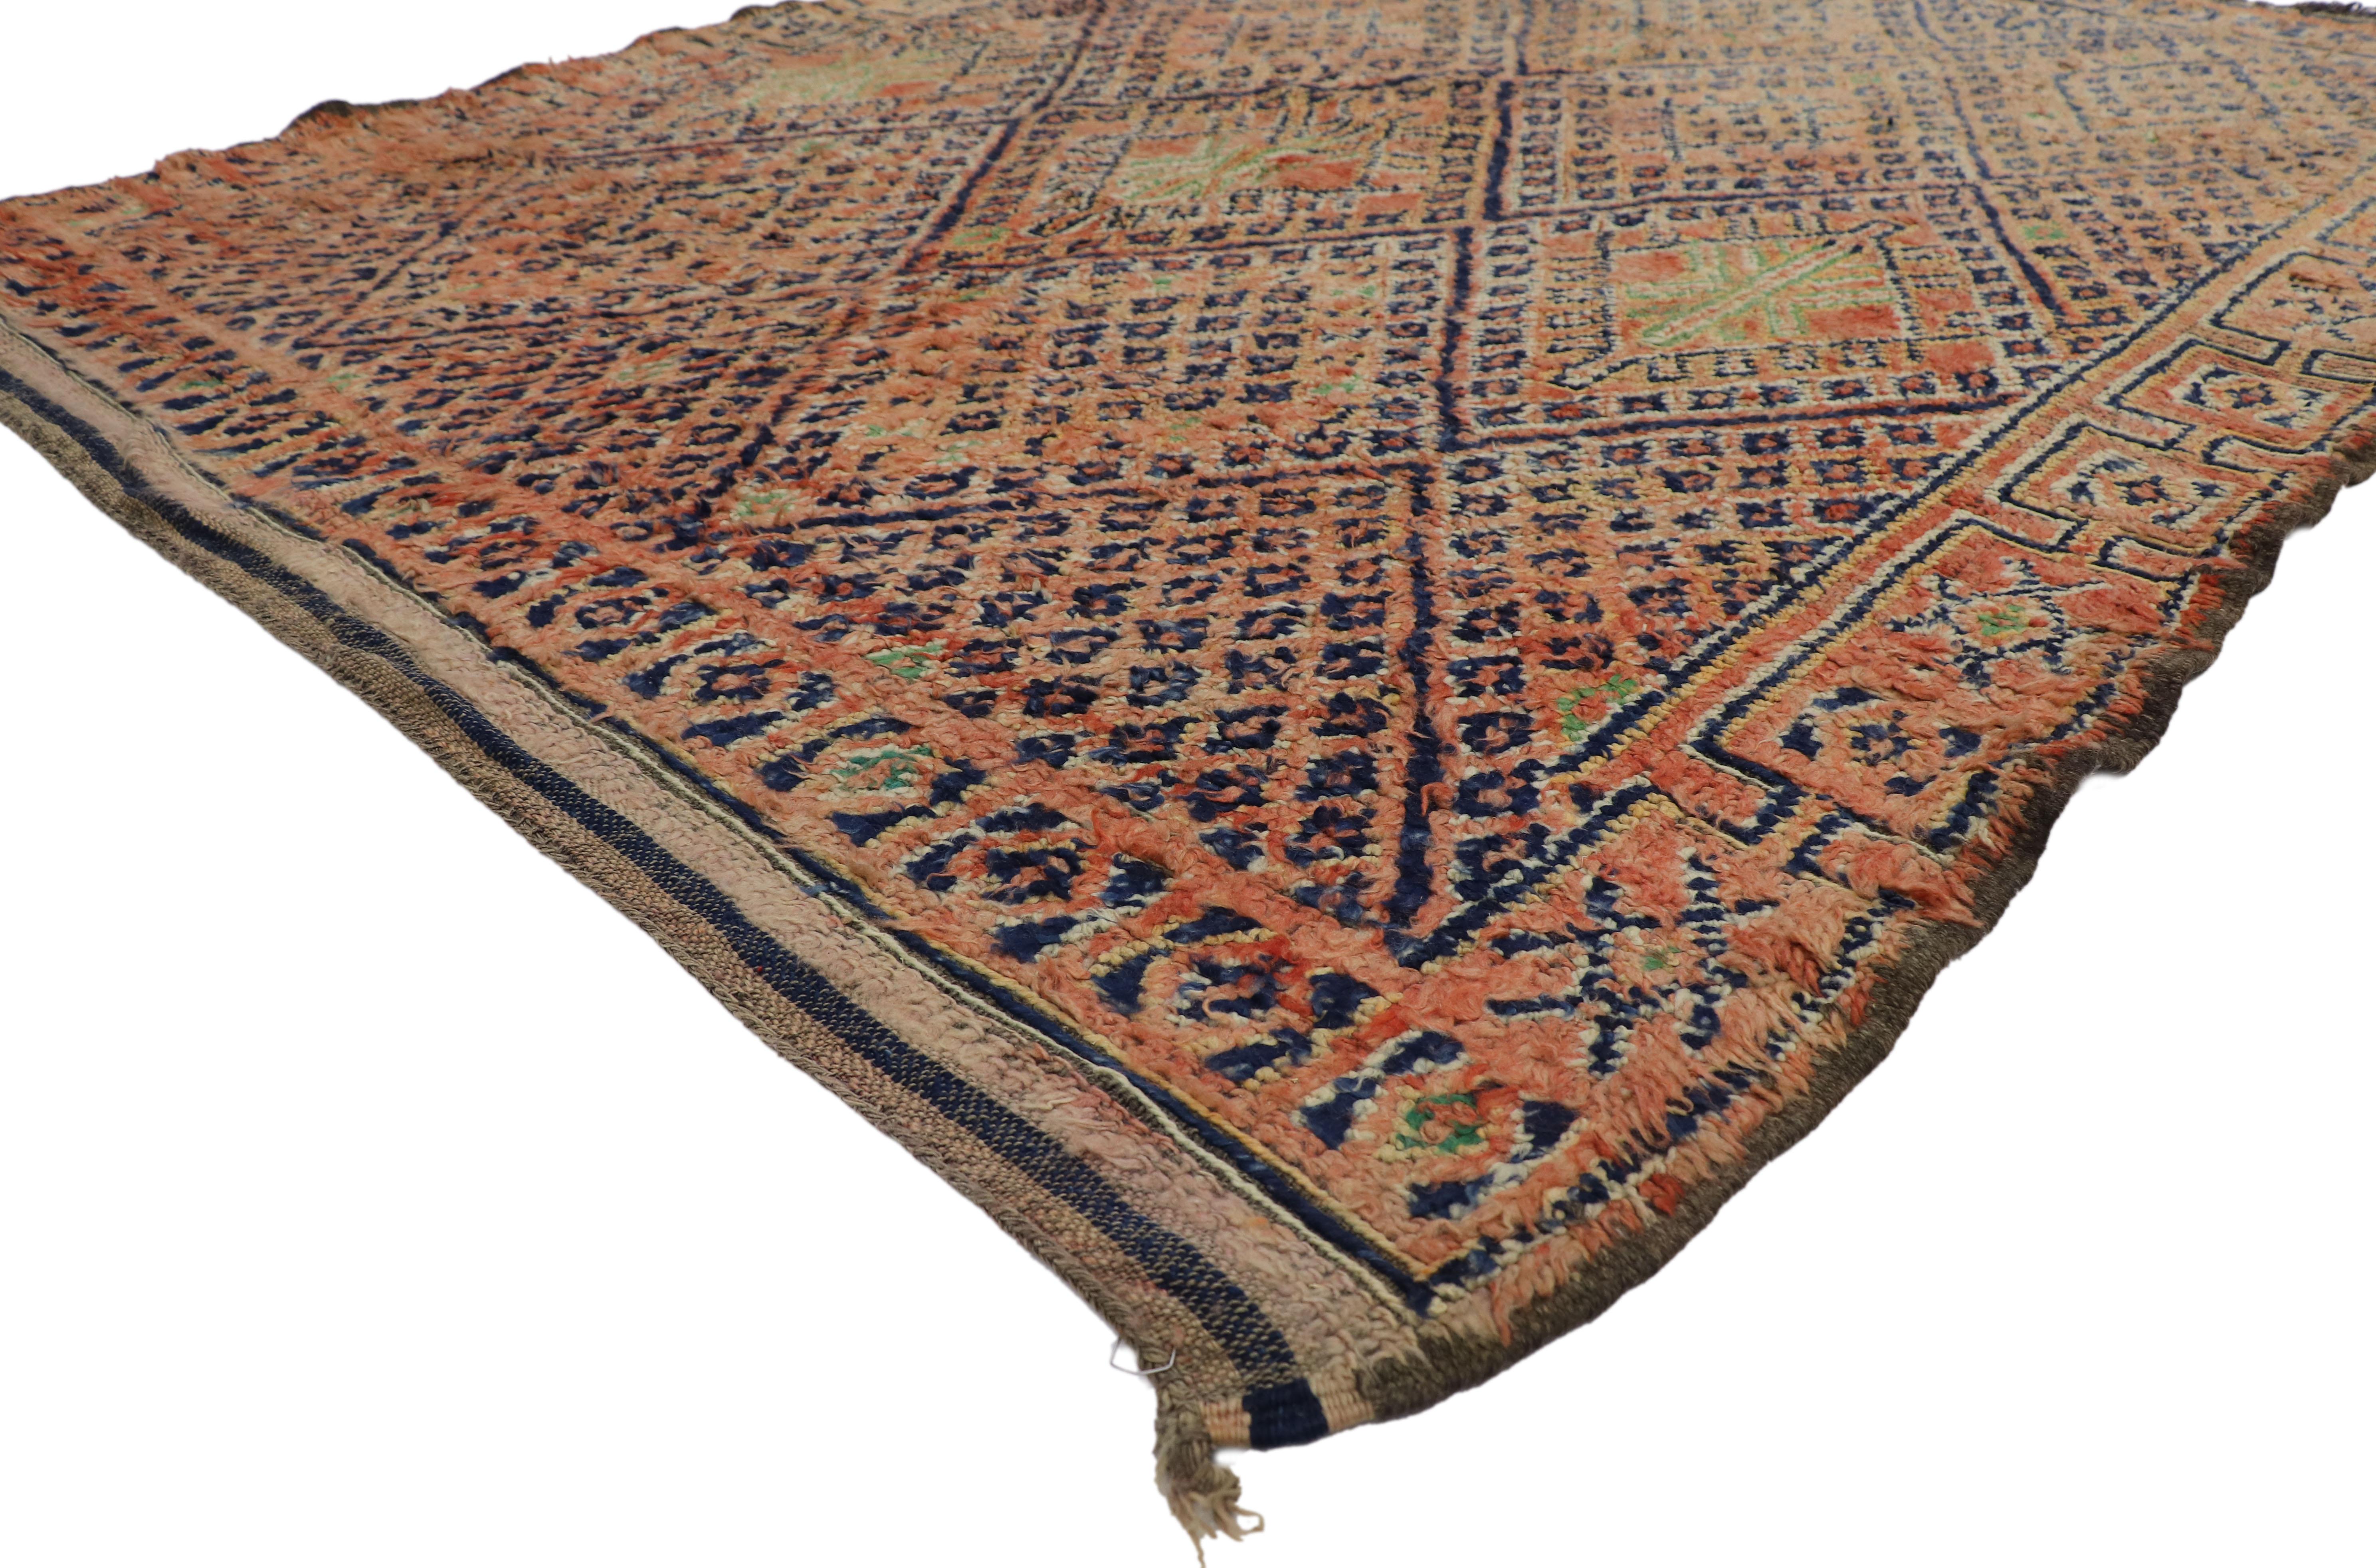 21499 Vintage Beni MGuild Marokkanischer Teppich, 06'07 x 08'01.
Dieser marokkanische Teppich aus handgeknüpfter Wolle im Vintage-Stil von Beni MGuild vereint Gemütlichkeit mit modernem Luxus. Das unverwechselbare Tribal-Gittermuster und die warmen,